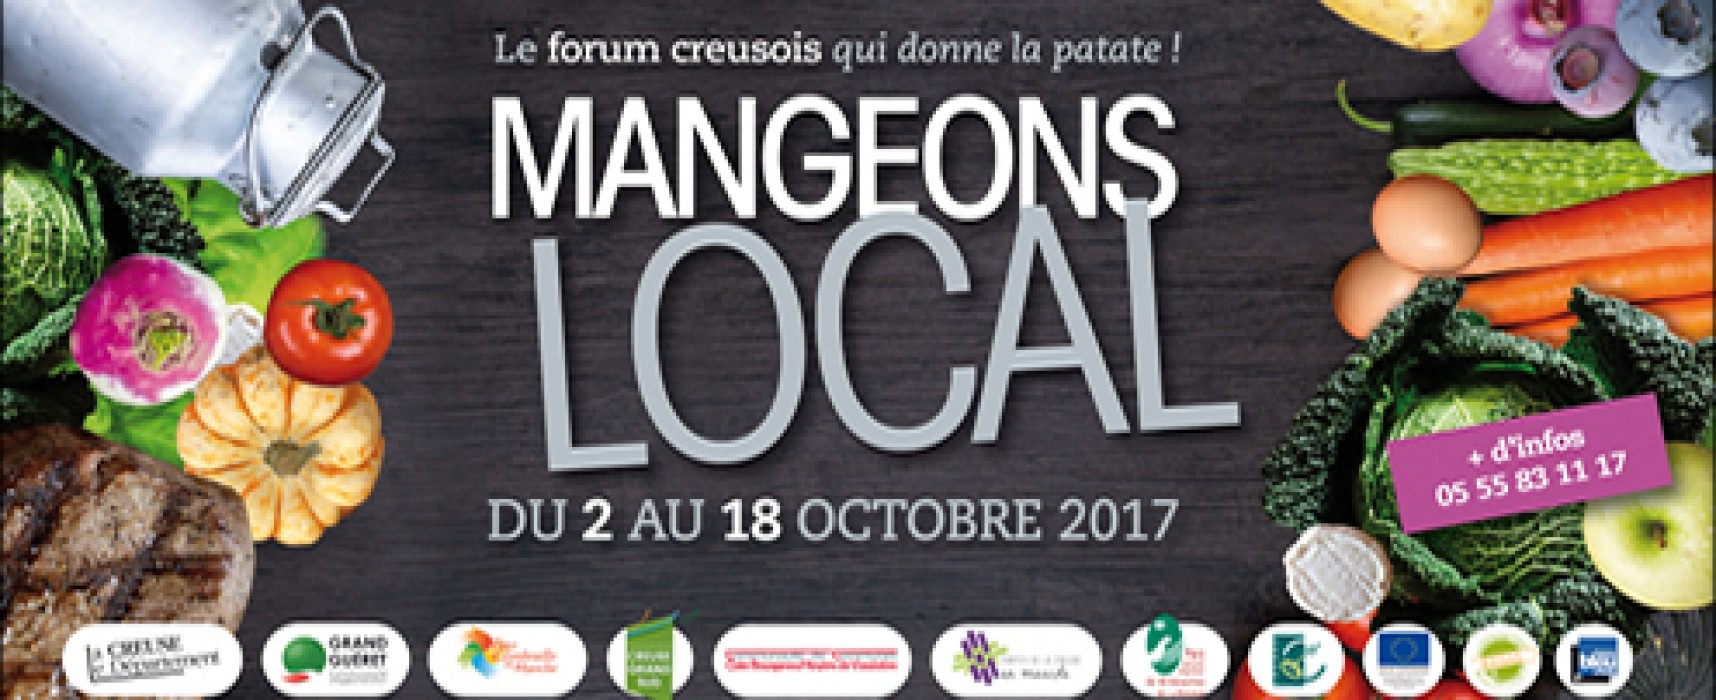 1er Forum de l’alimentation locale du 2 au 18 octobre 2017